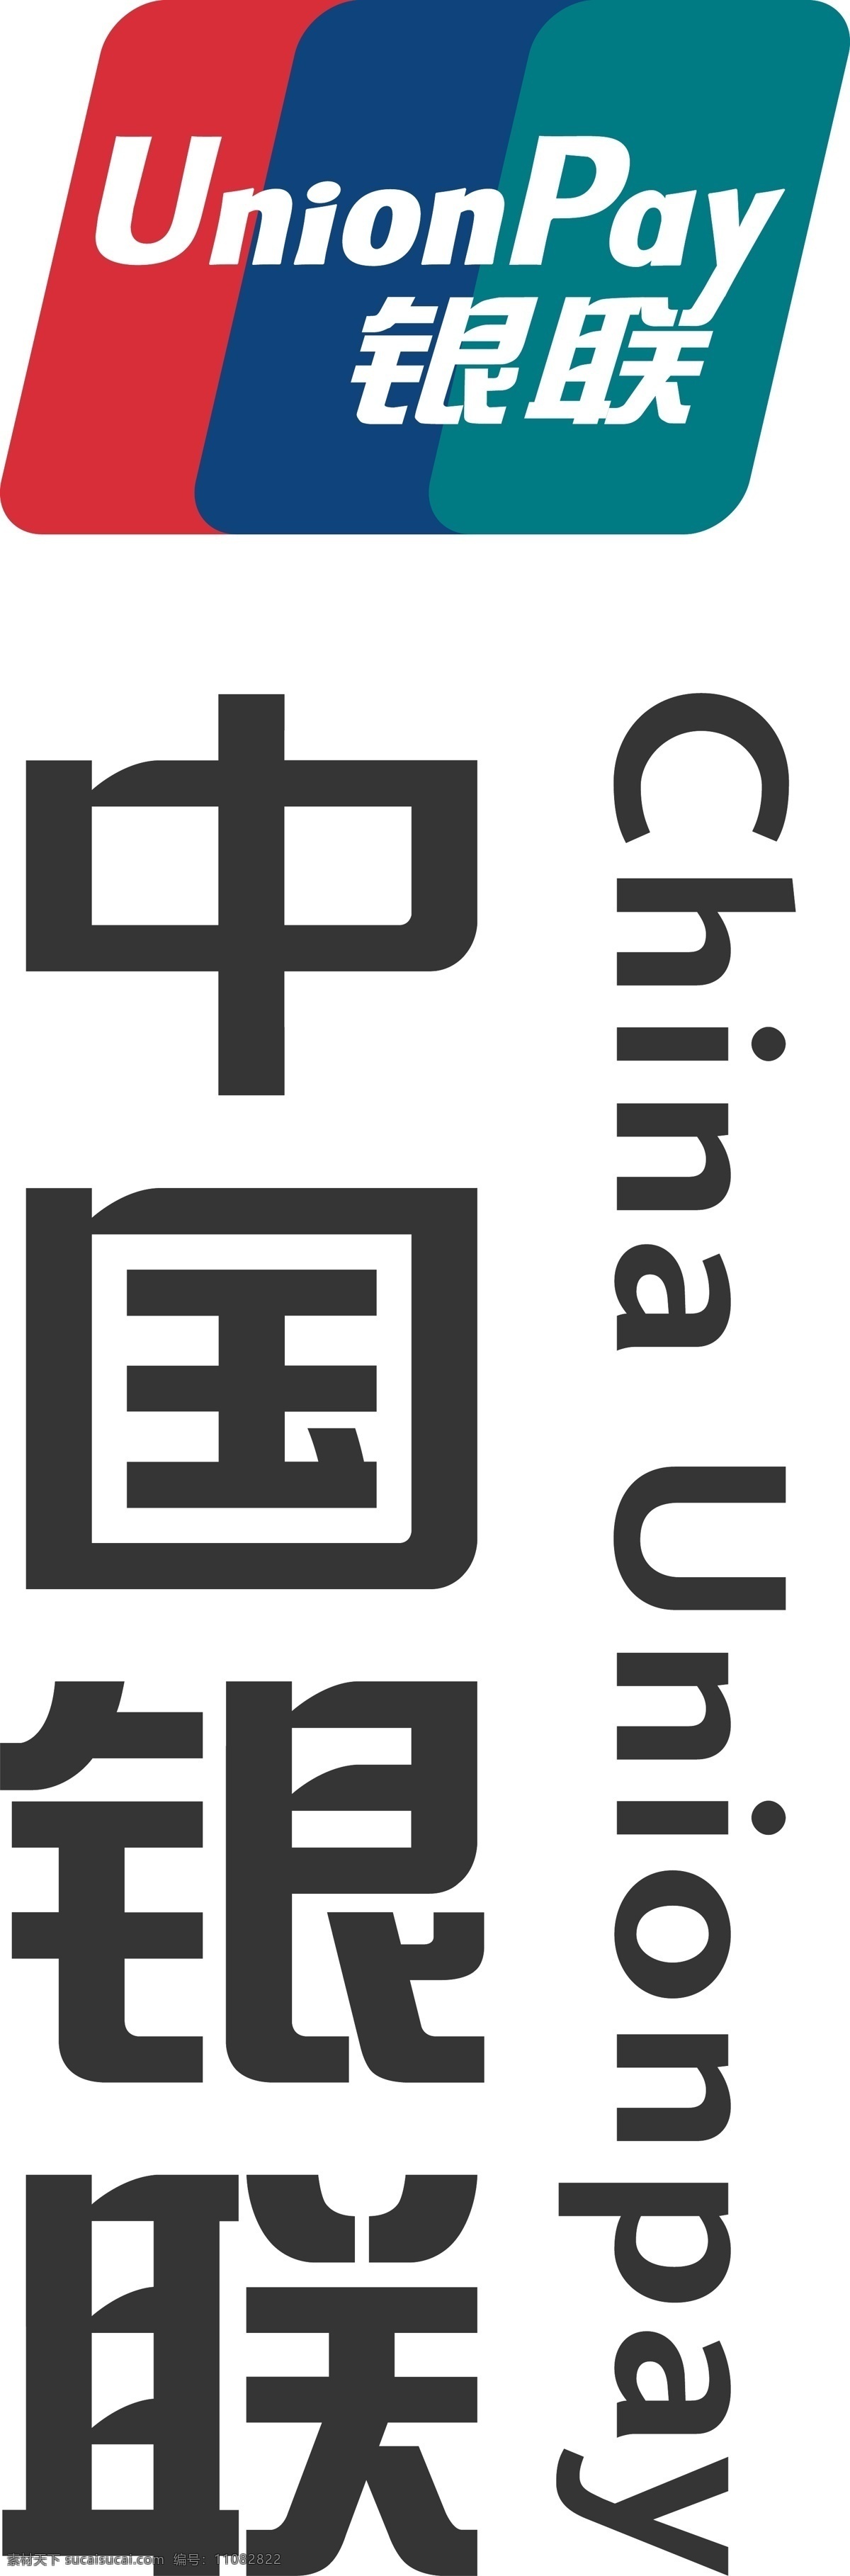 竖 版 中国 银 联 logo 竖版 中国银联 商务金融 金融货币 矢量图库